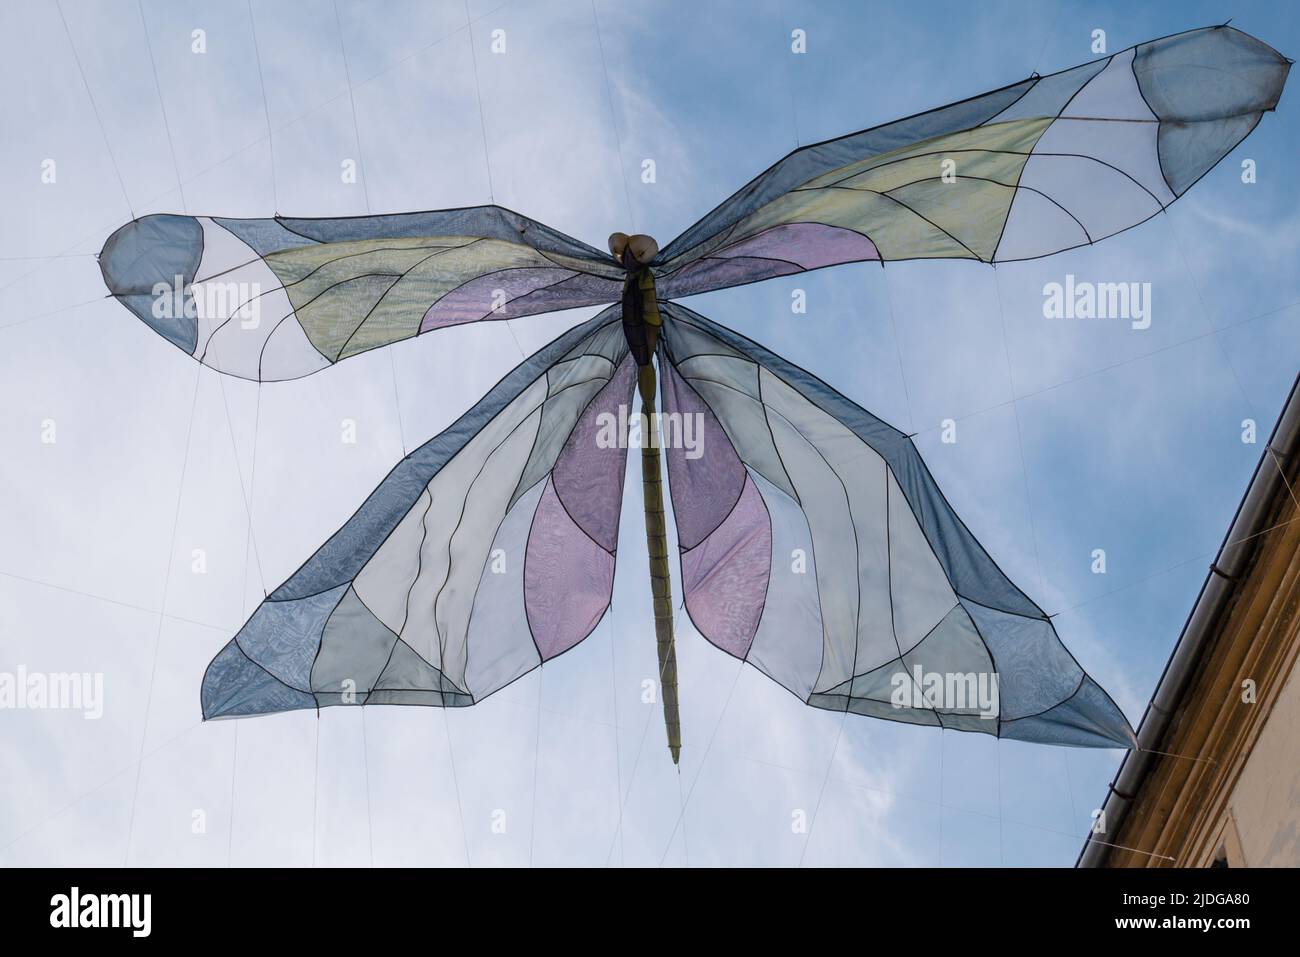 Ein großer Schmetterling in verschiedenen Farben vertäute und breitete sich zwischen Gebäuden aus. Eine phantasievolle Darstellung eines Insekts. Varazdin, 2021. Stockfoto